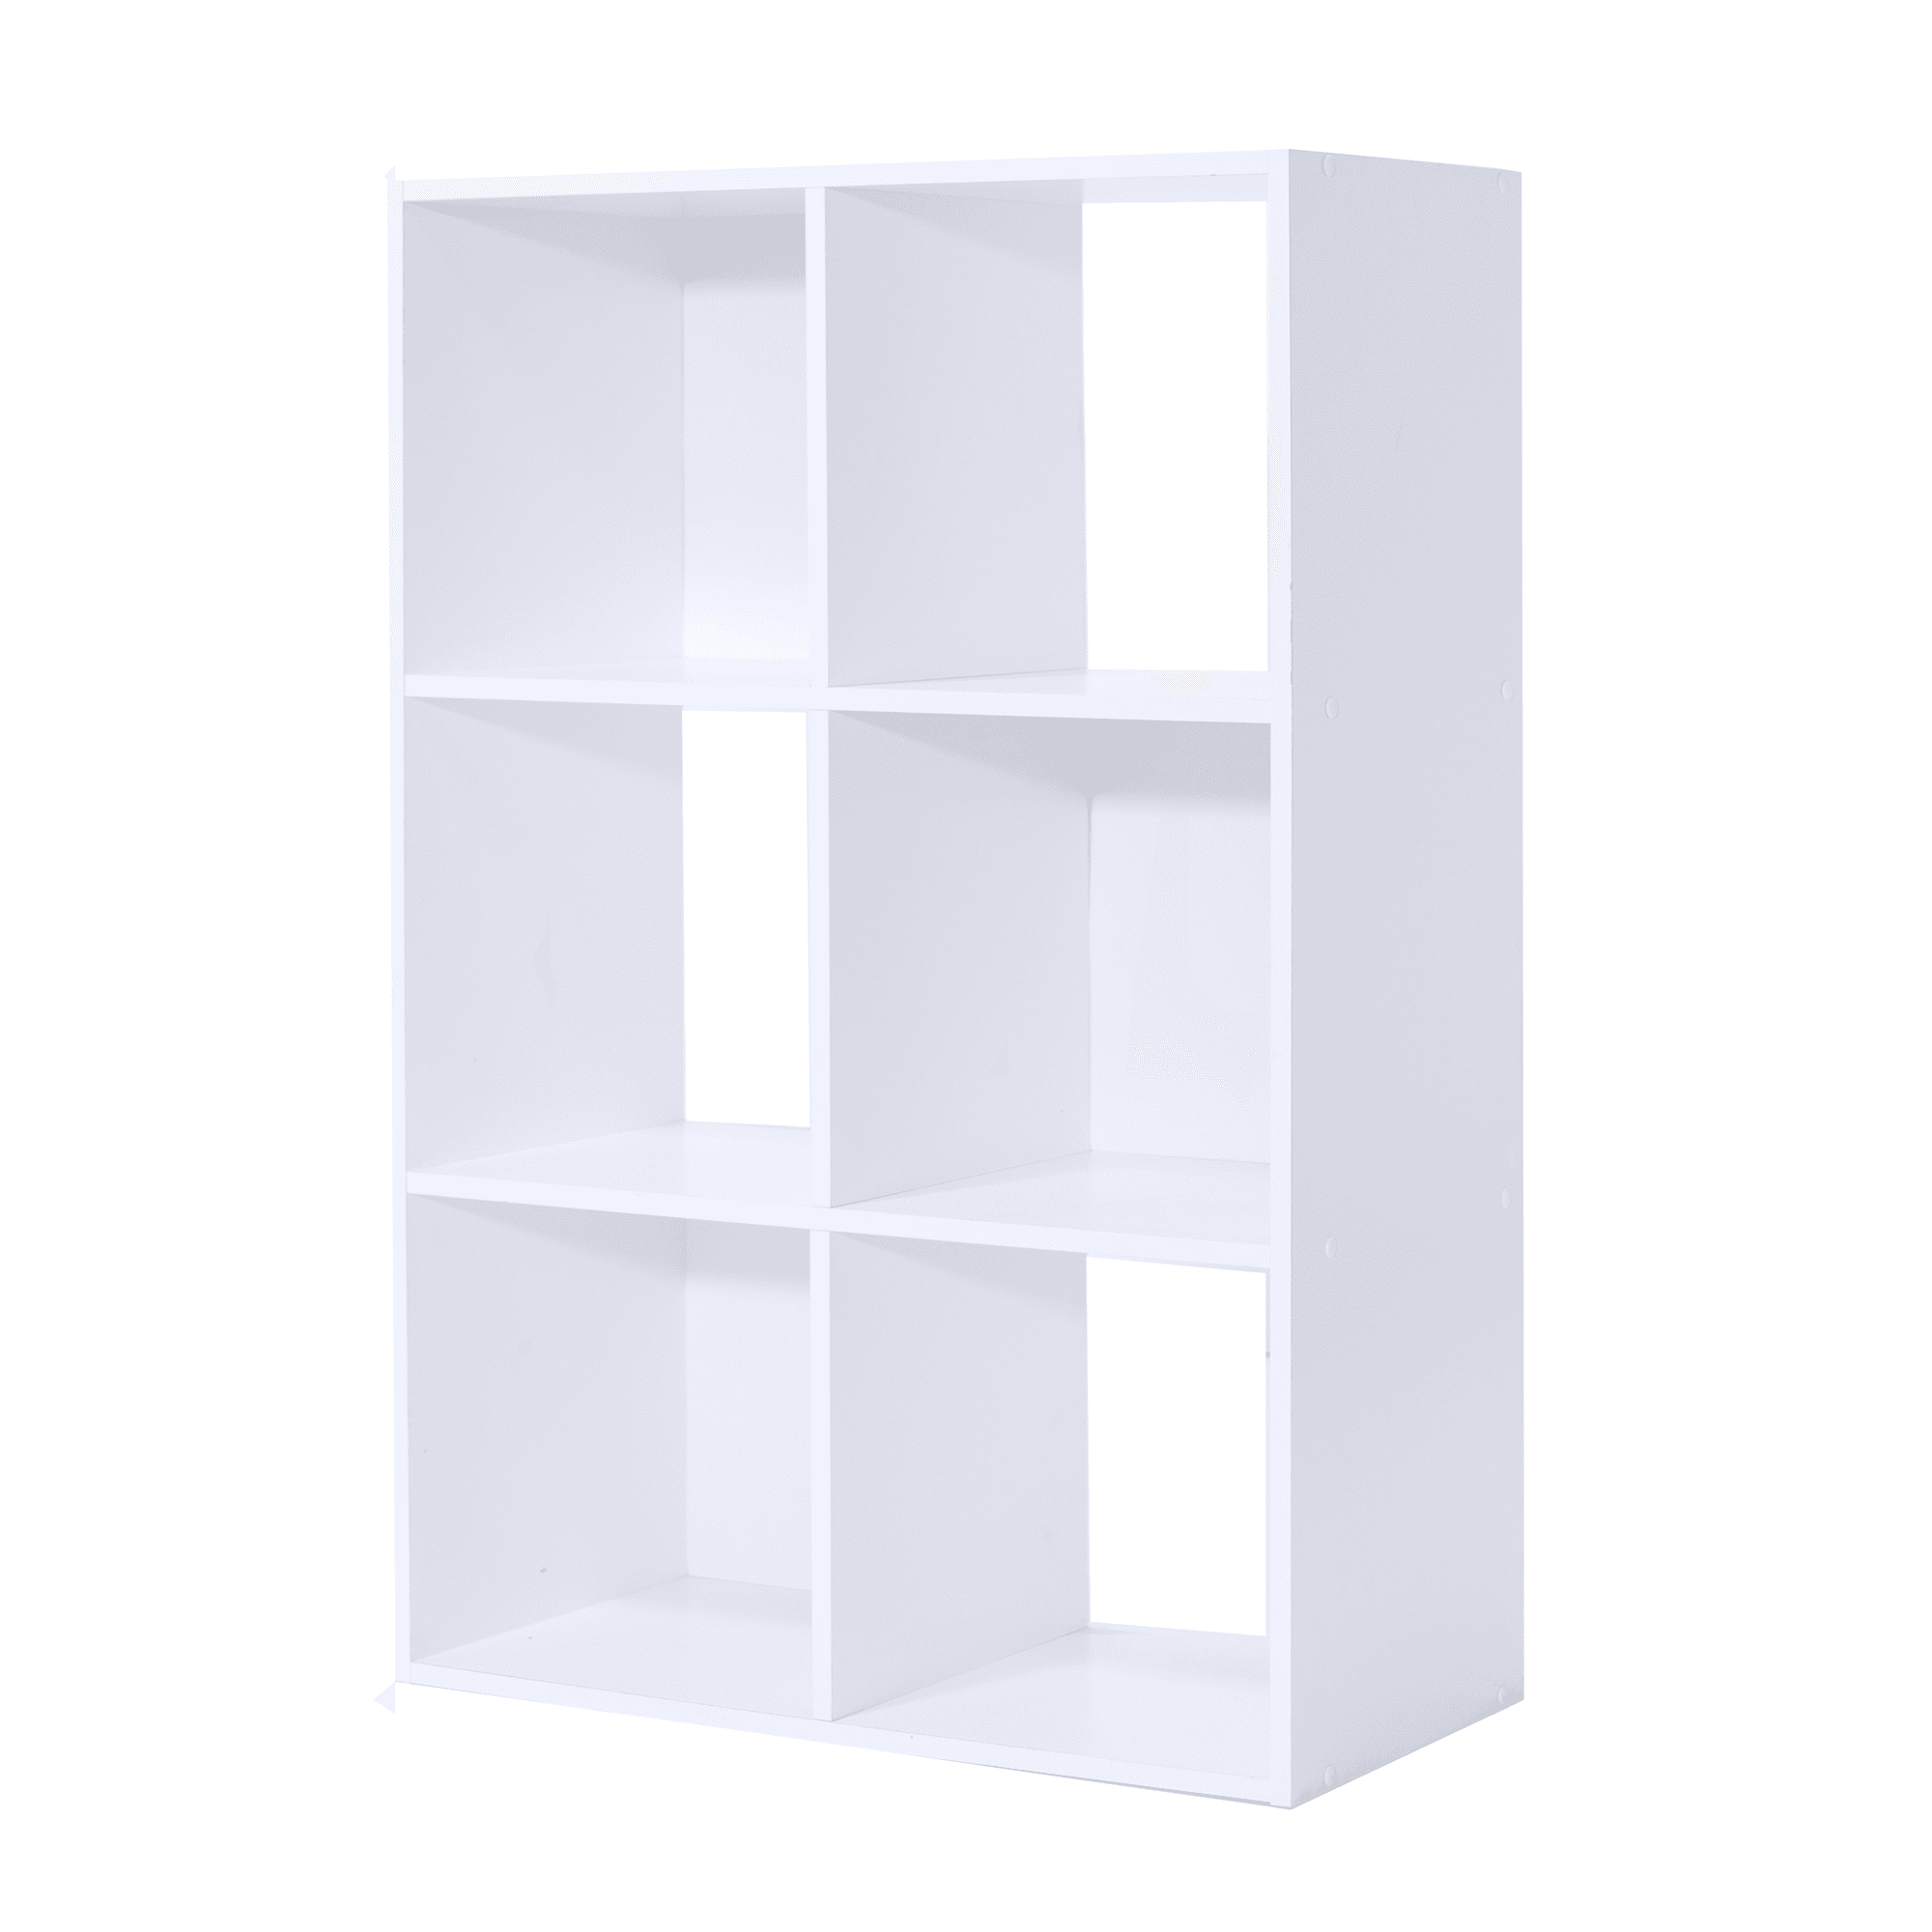 Mainstays 6 Cube Storage Organizer, 6 Bin Organizer Bookcase